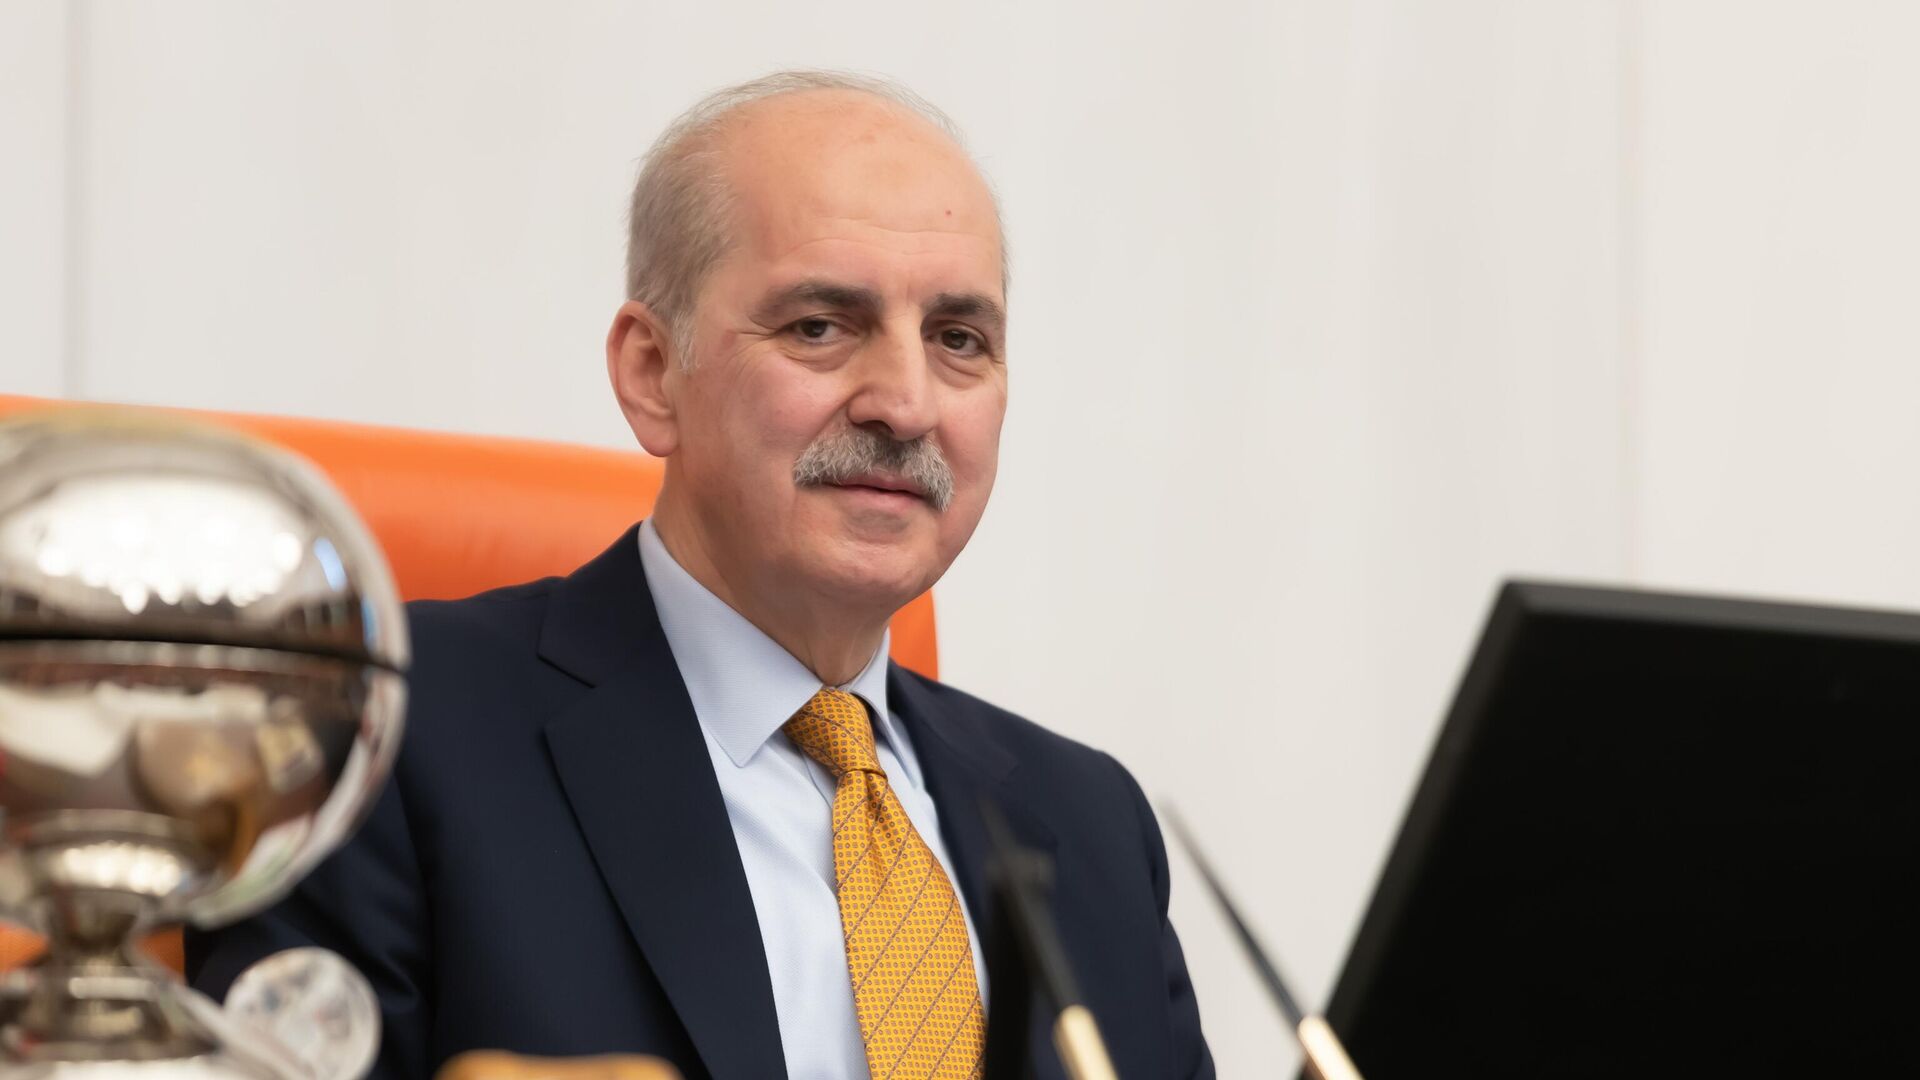 Meclis’te yeni yasama yılı: “Türkiye teröre teslim olmayacak”